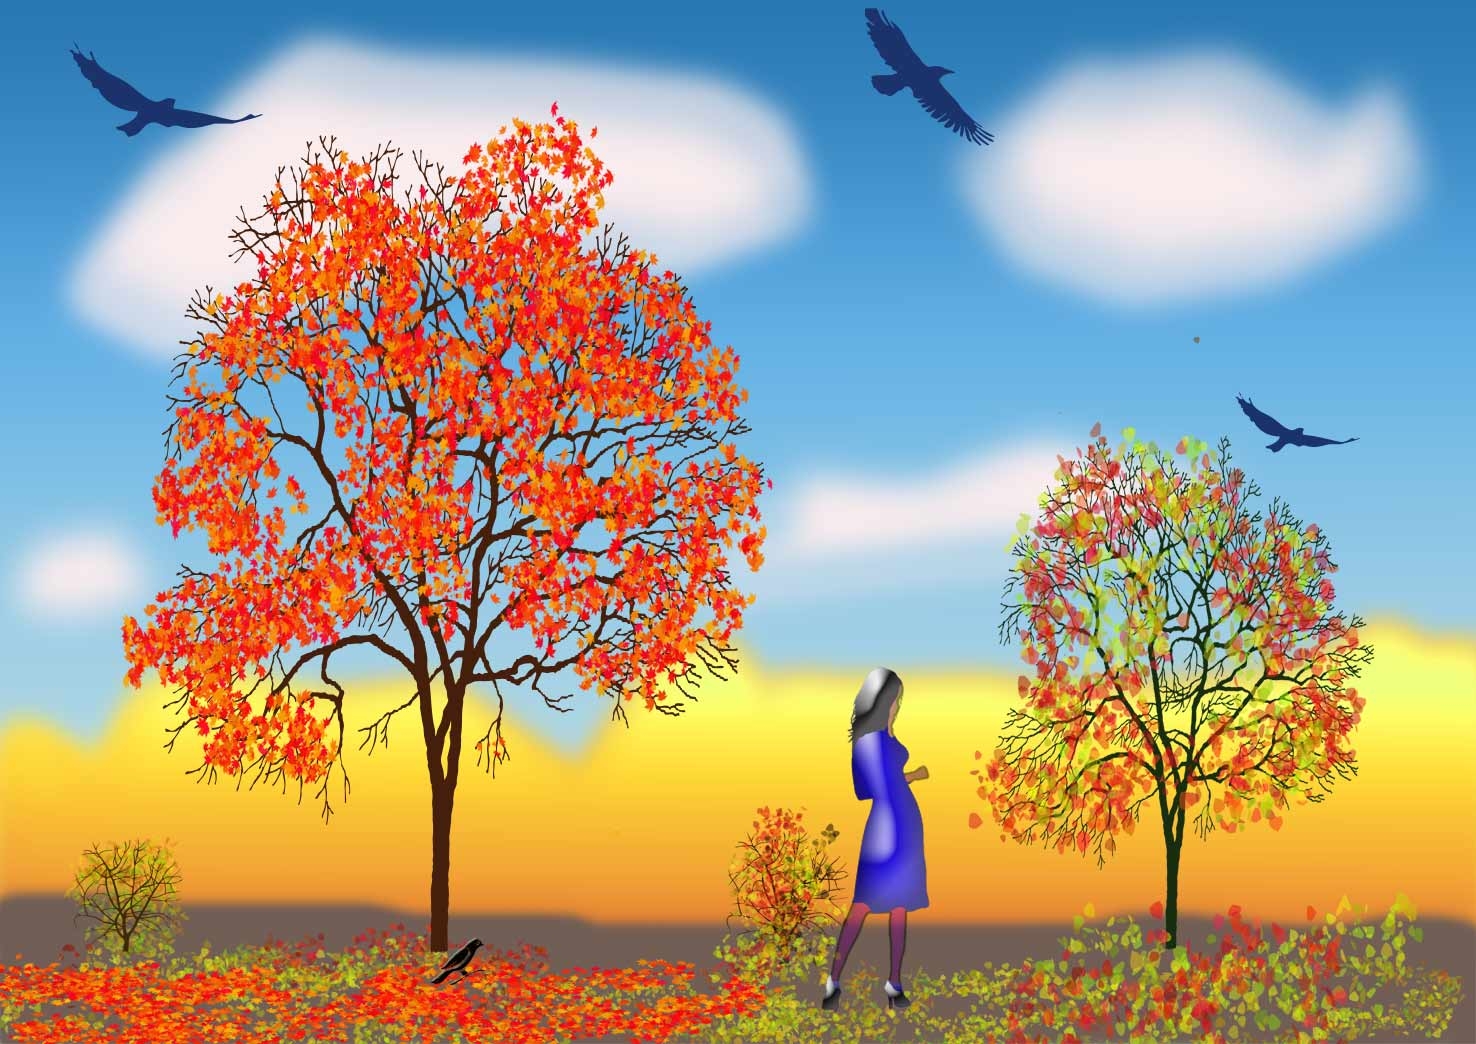 Осень деревья листопад для детей